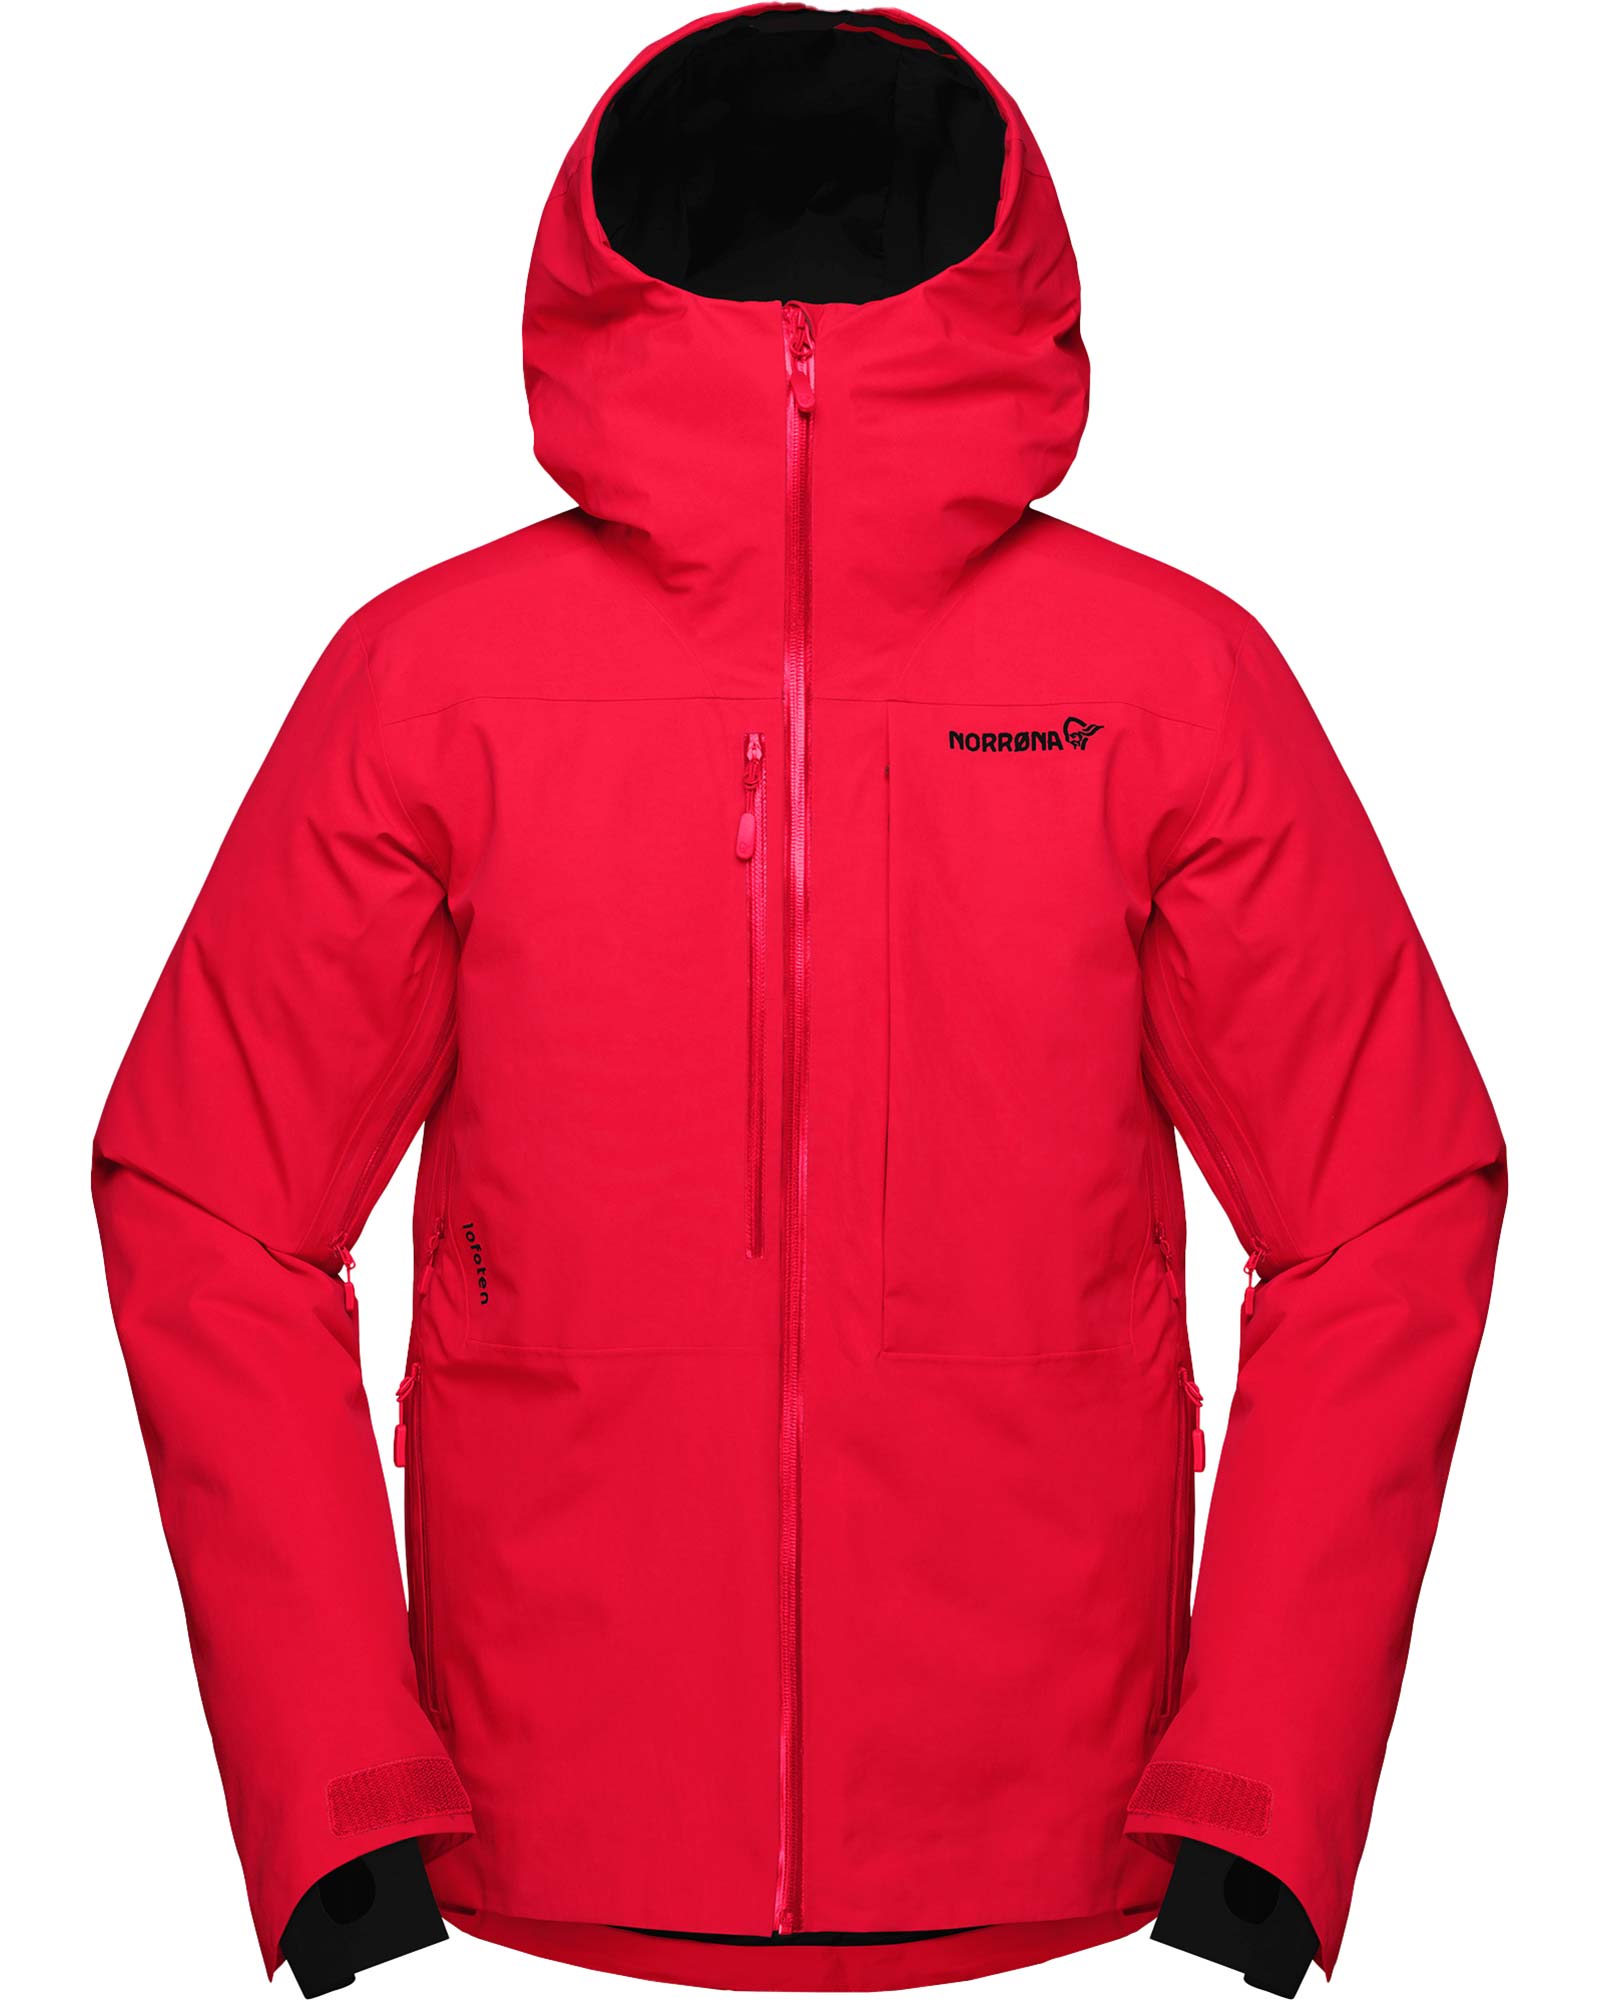 Norrona Lofoten GORE TEX Men’s Insulated Jacket - True Red S